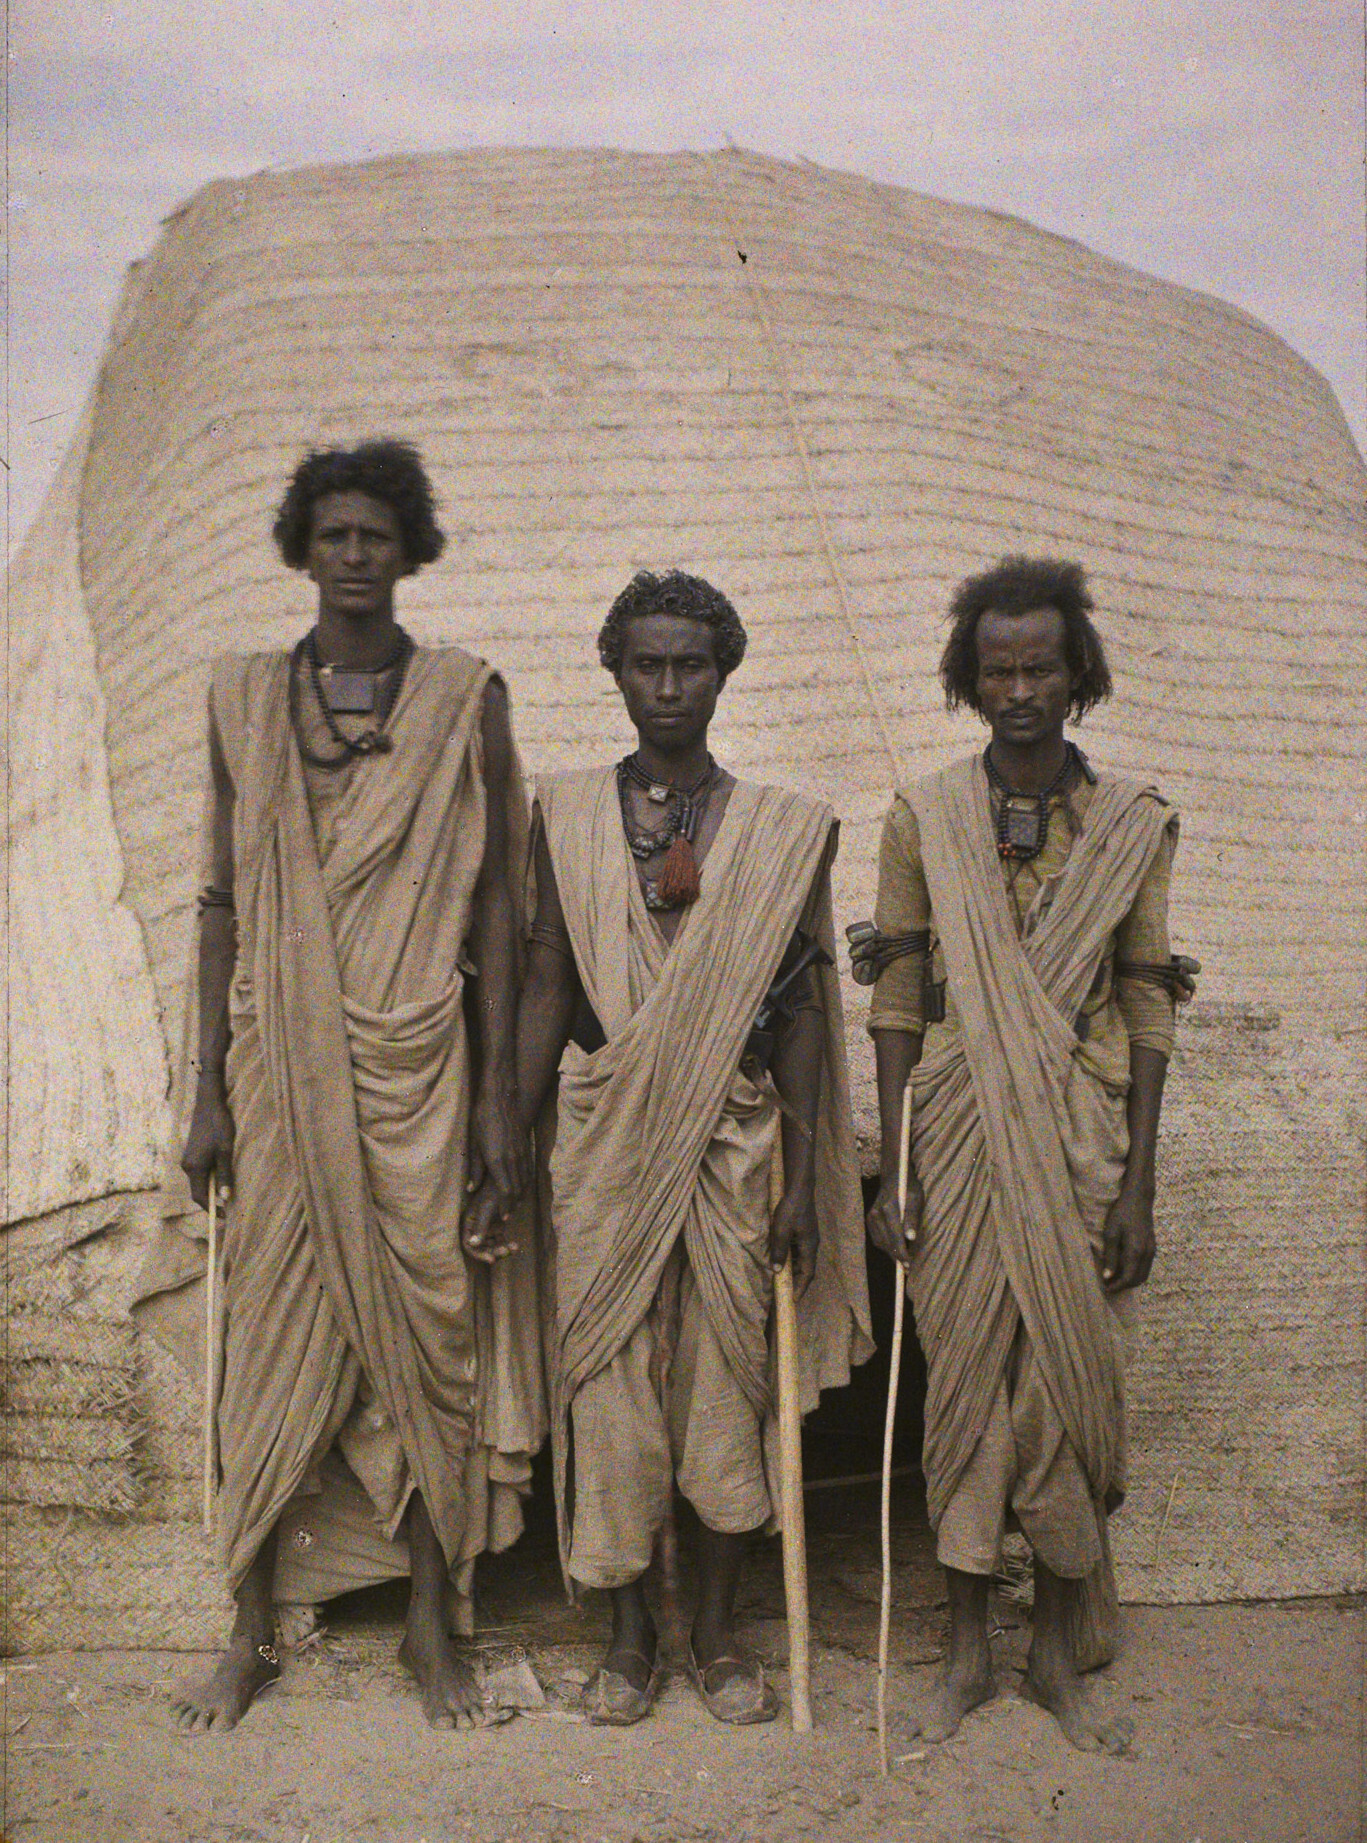 Асуан, Египет. Трое мужчин бишари перед домом, 1914 год, автор Огюст Леон (автохром)